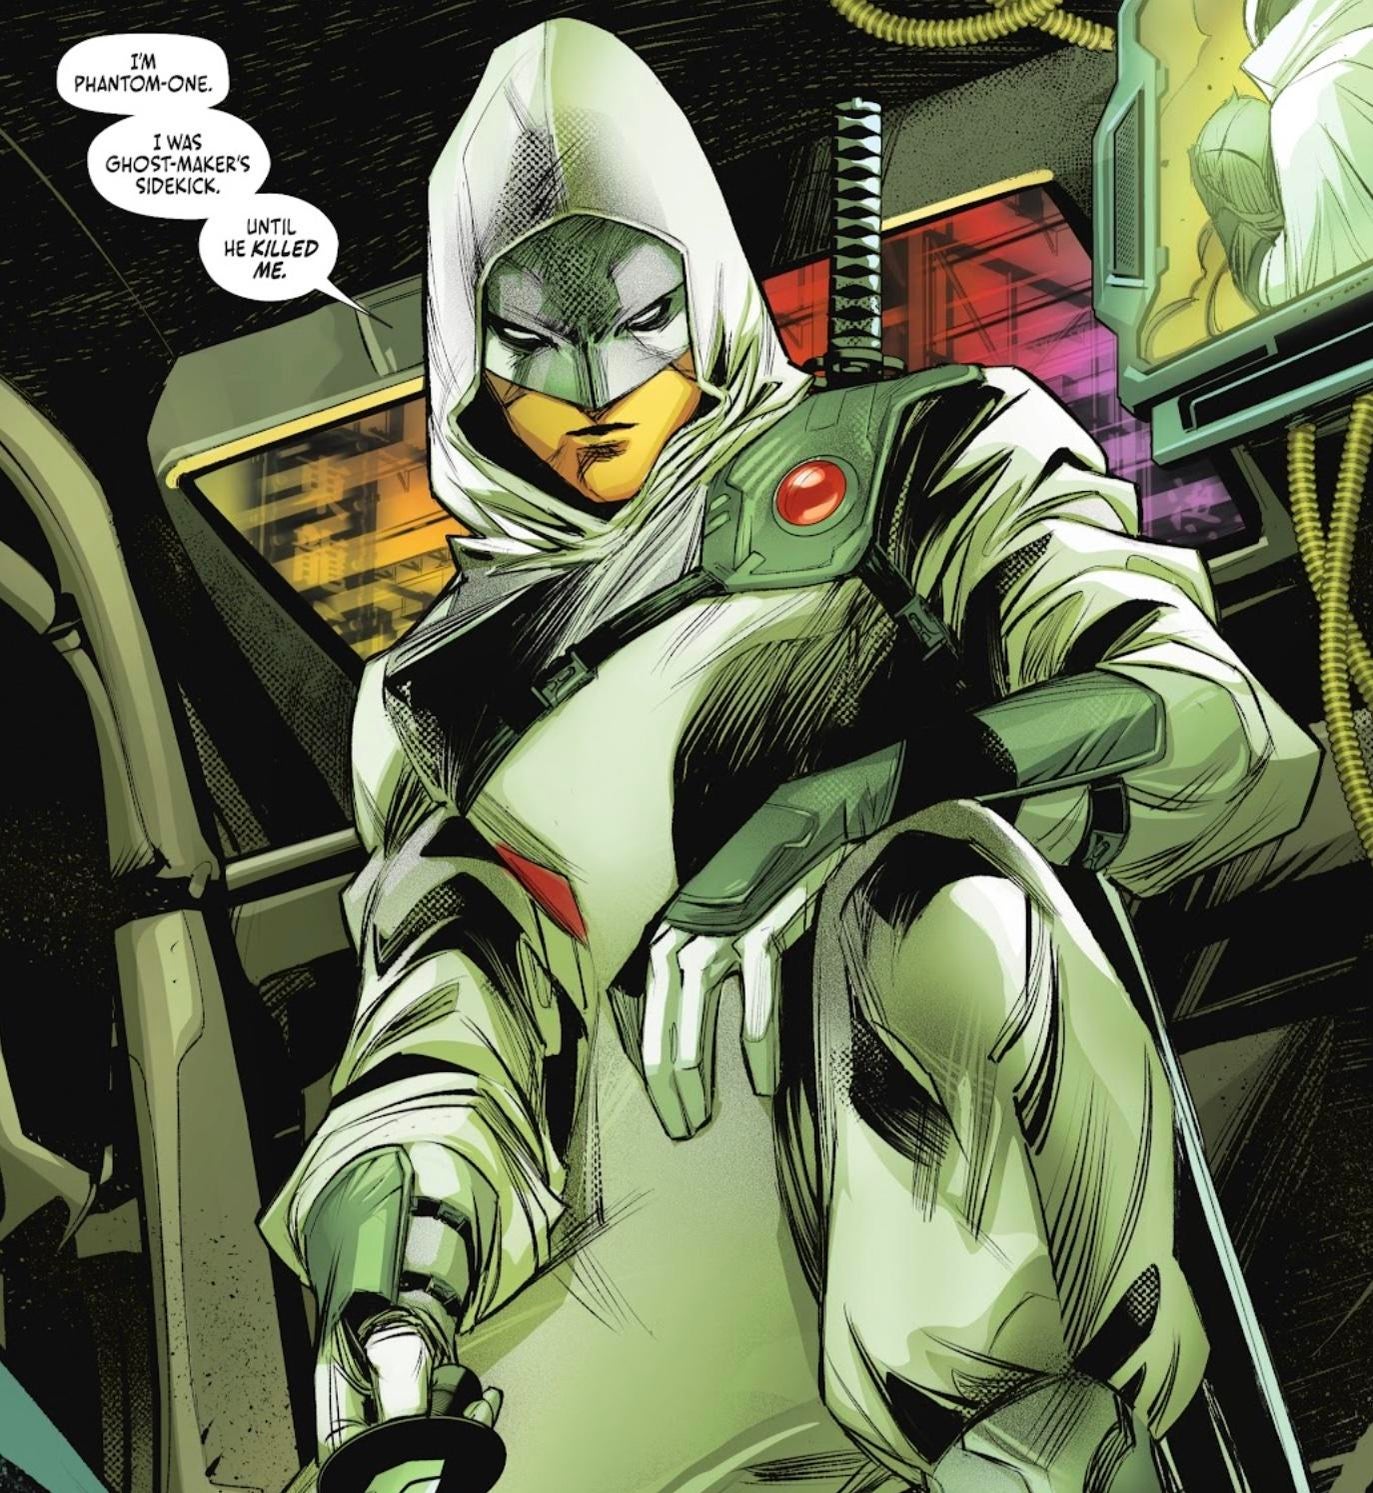 DC Just Gave a Fan-Favorite Antihero a Sidekick